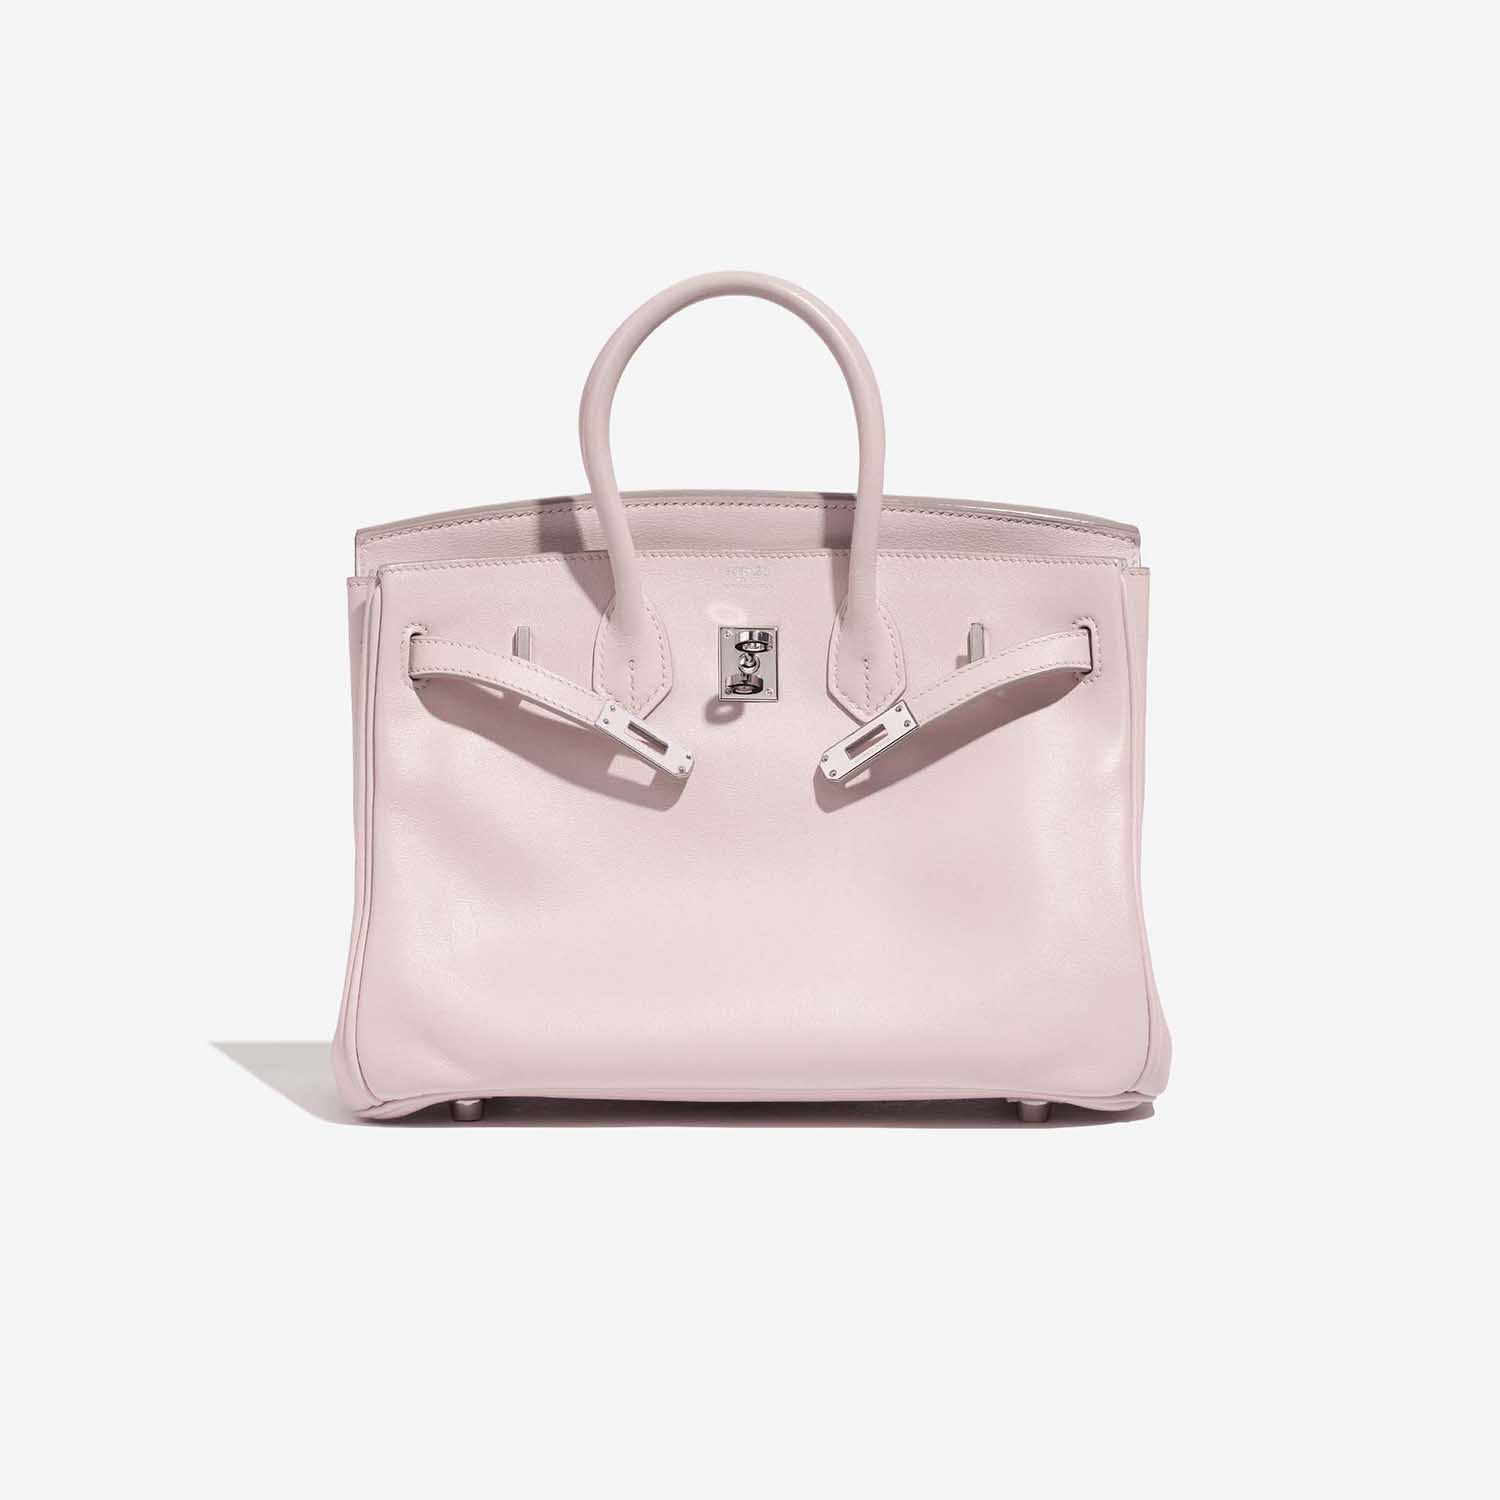 Pre-owned Hermès Tasche Birkin 25 Swift Rose Dragee Rose Front Open | Verkaufen Sie Ihre Designer-Tasche auf Saclab.com